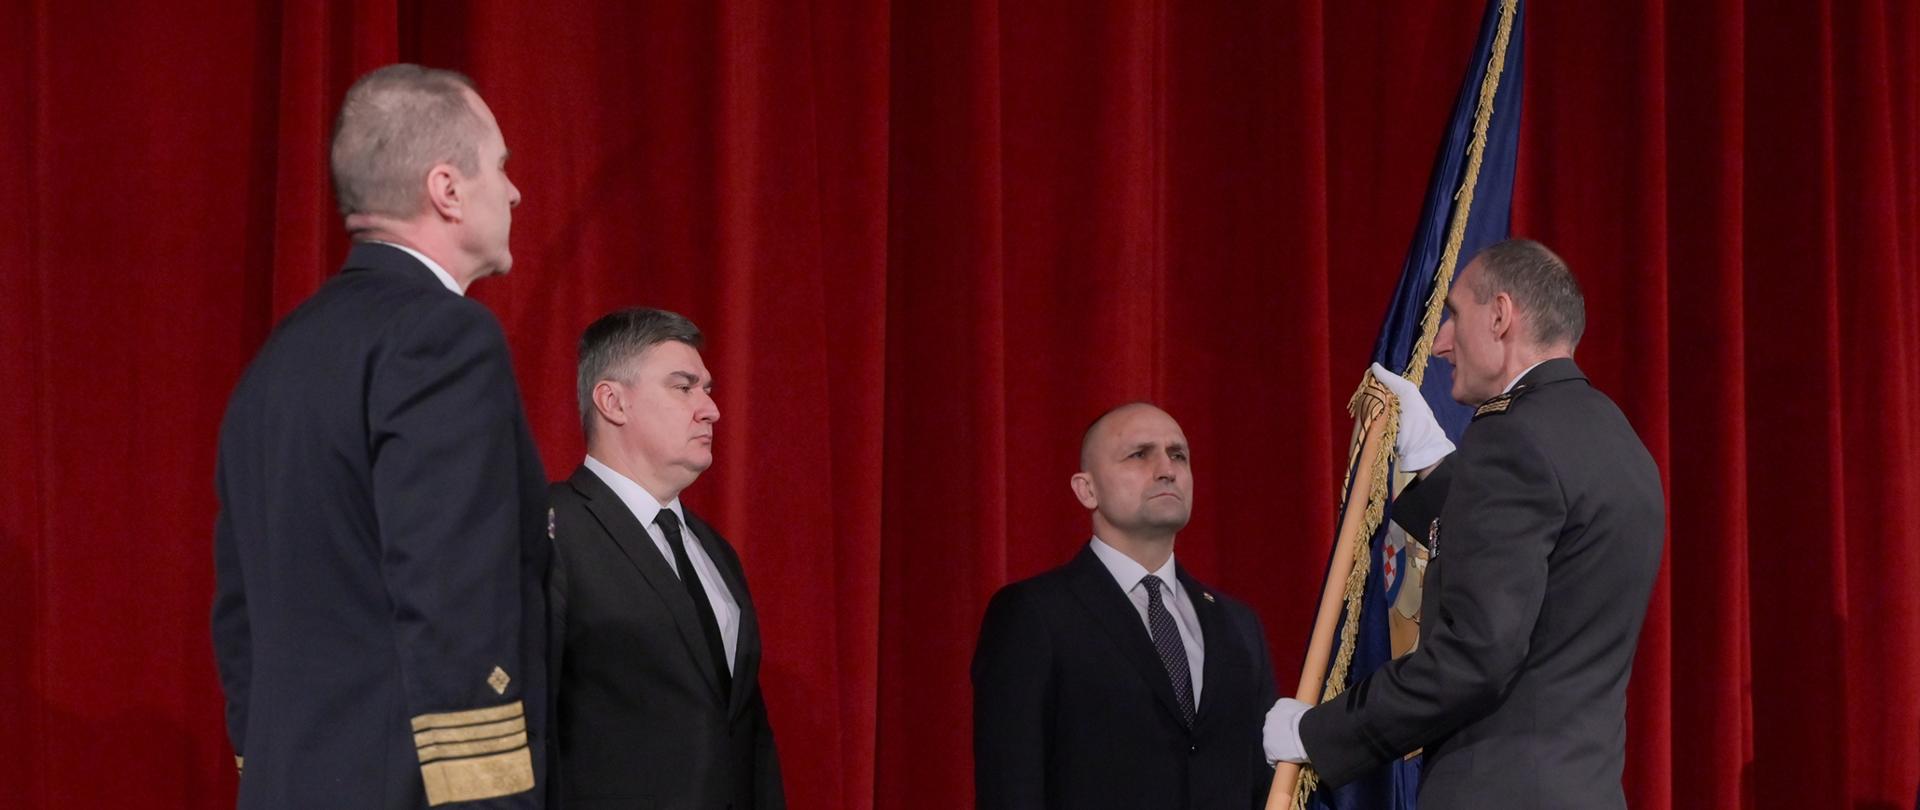 Uroczystość przekazania obowiązków na stanowisku Szefa Sztabu Sił Zbrojnych Republiki Chorwacji T.Kundidowi